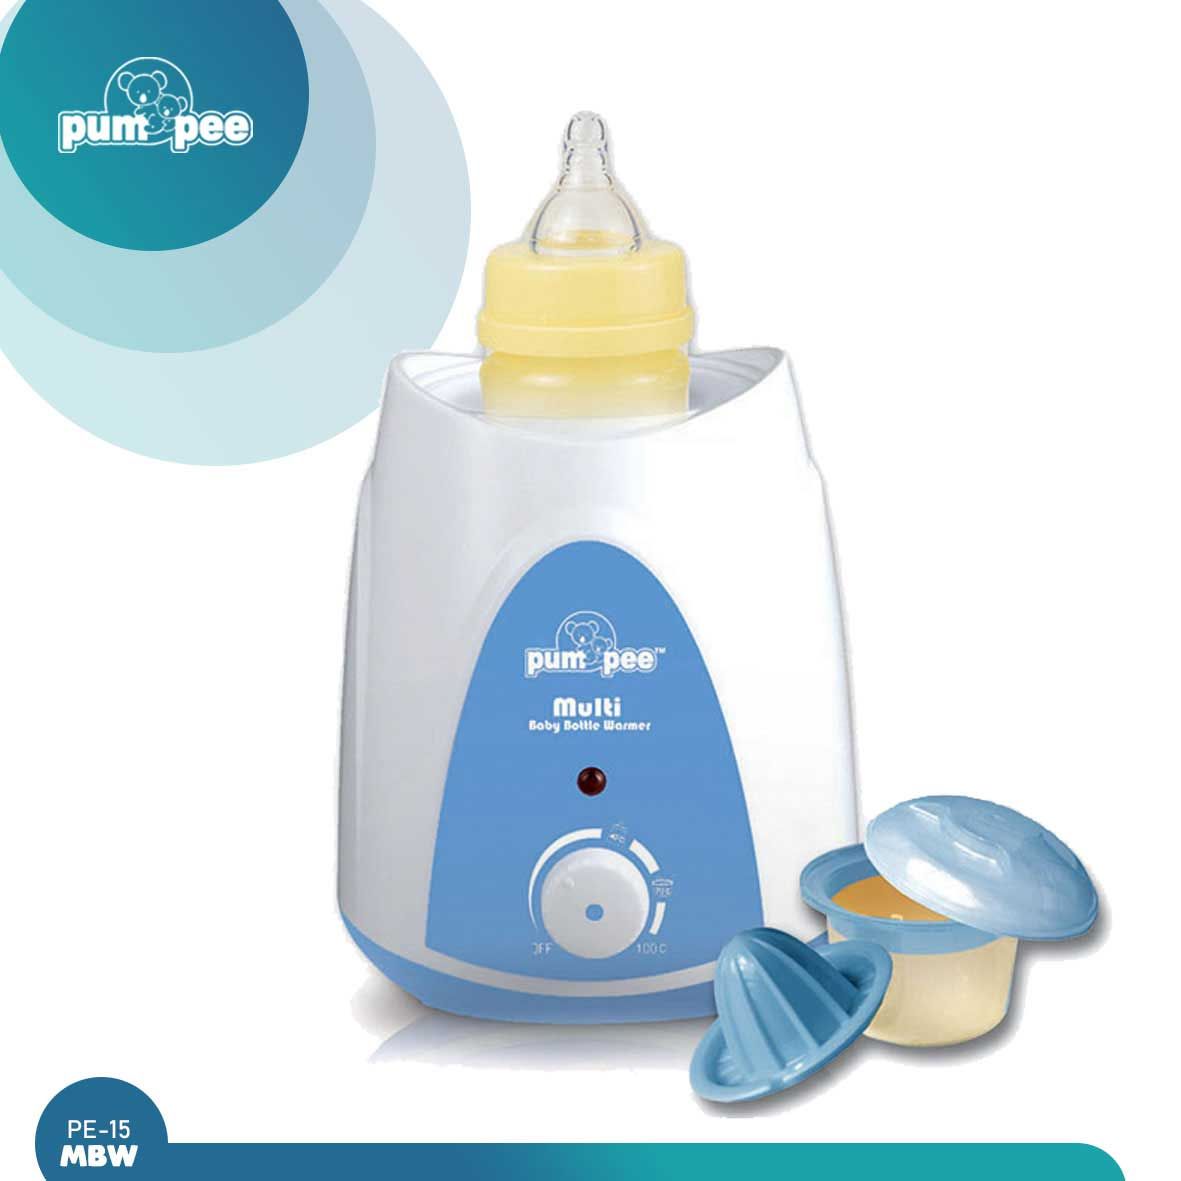 Pumpee Multi Baby Bottle Warmer | PE-15MBW - 1